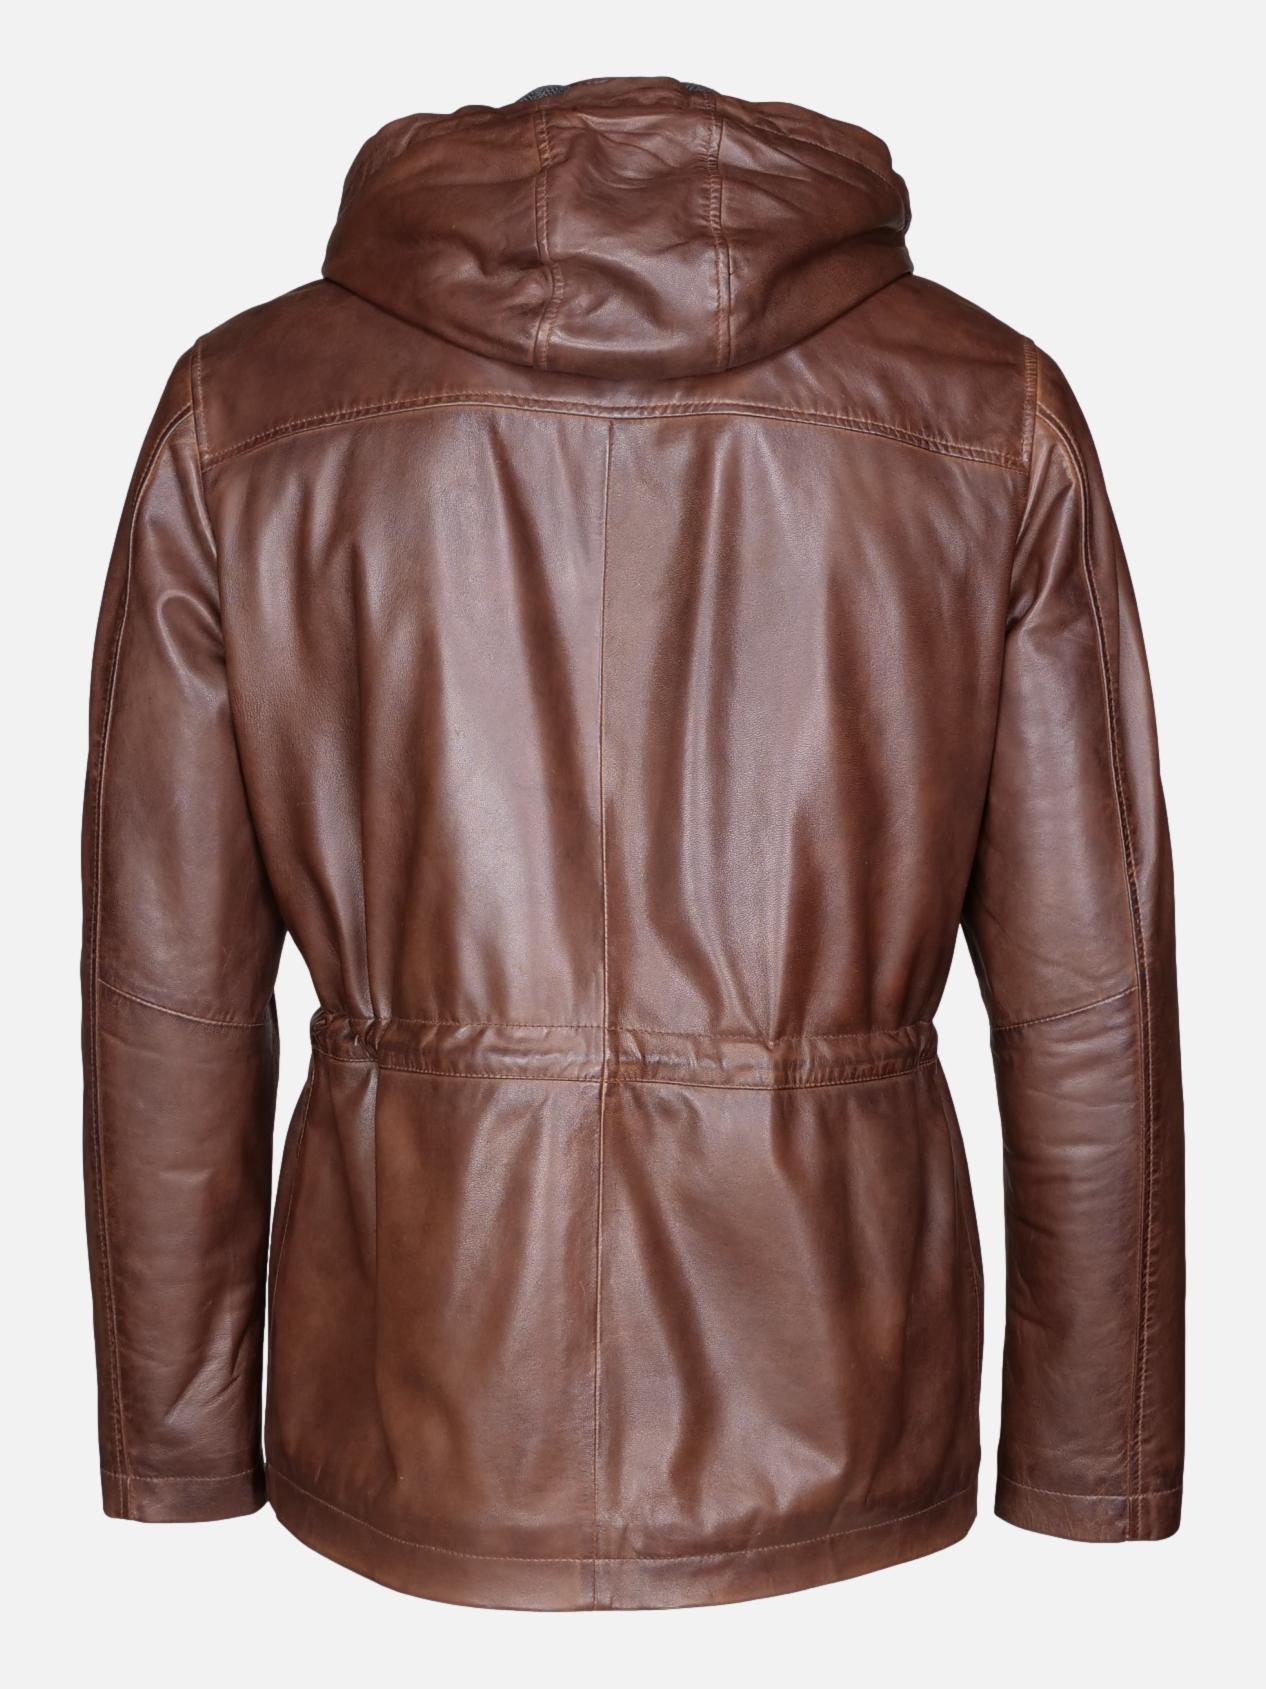 Gassa, 80 cm. - Hood - Lamb Malli Leather - Man - Copper Brown